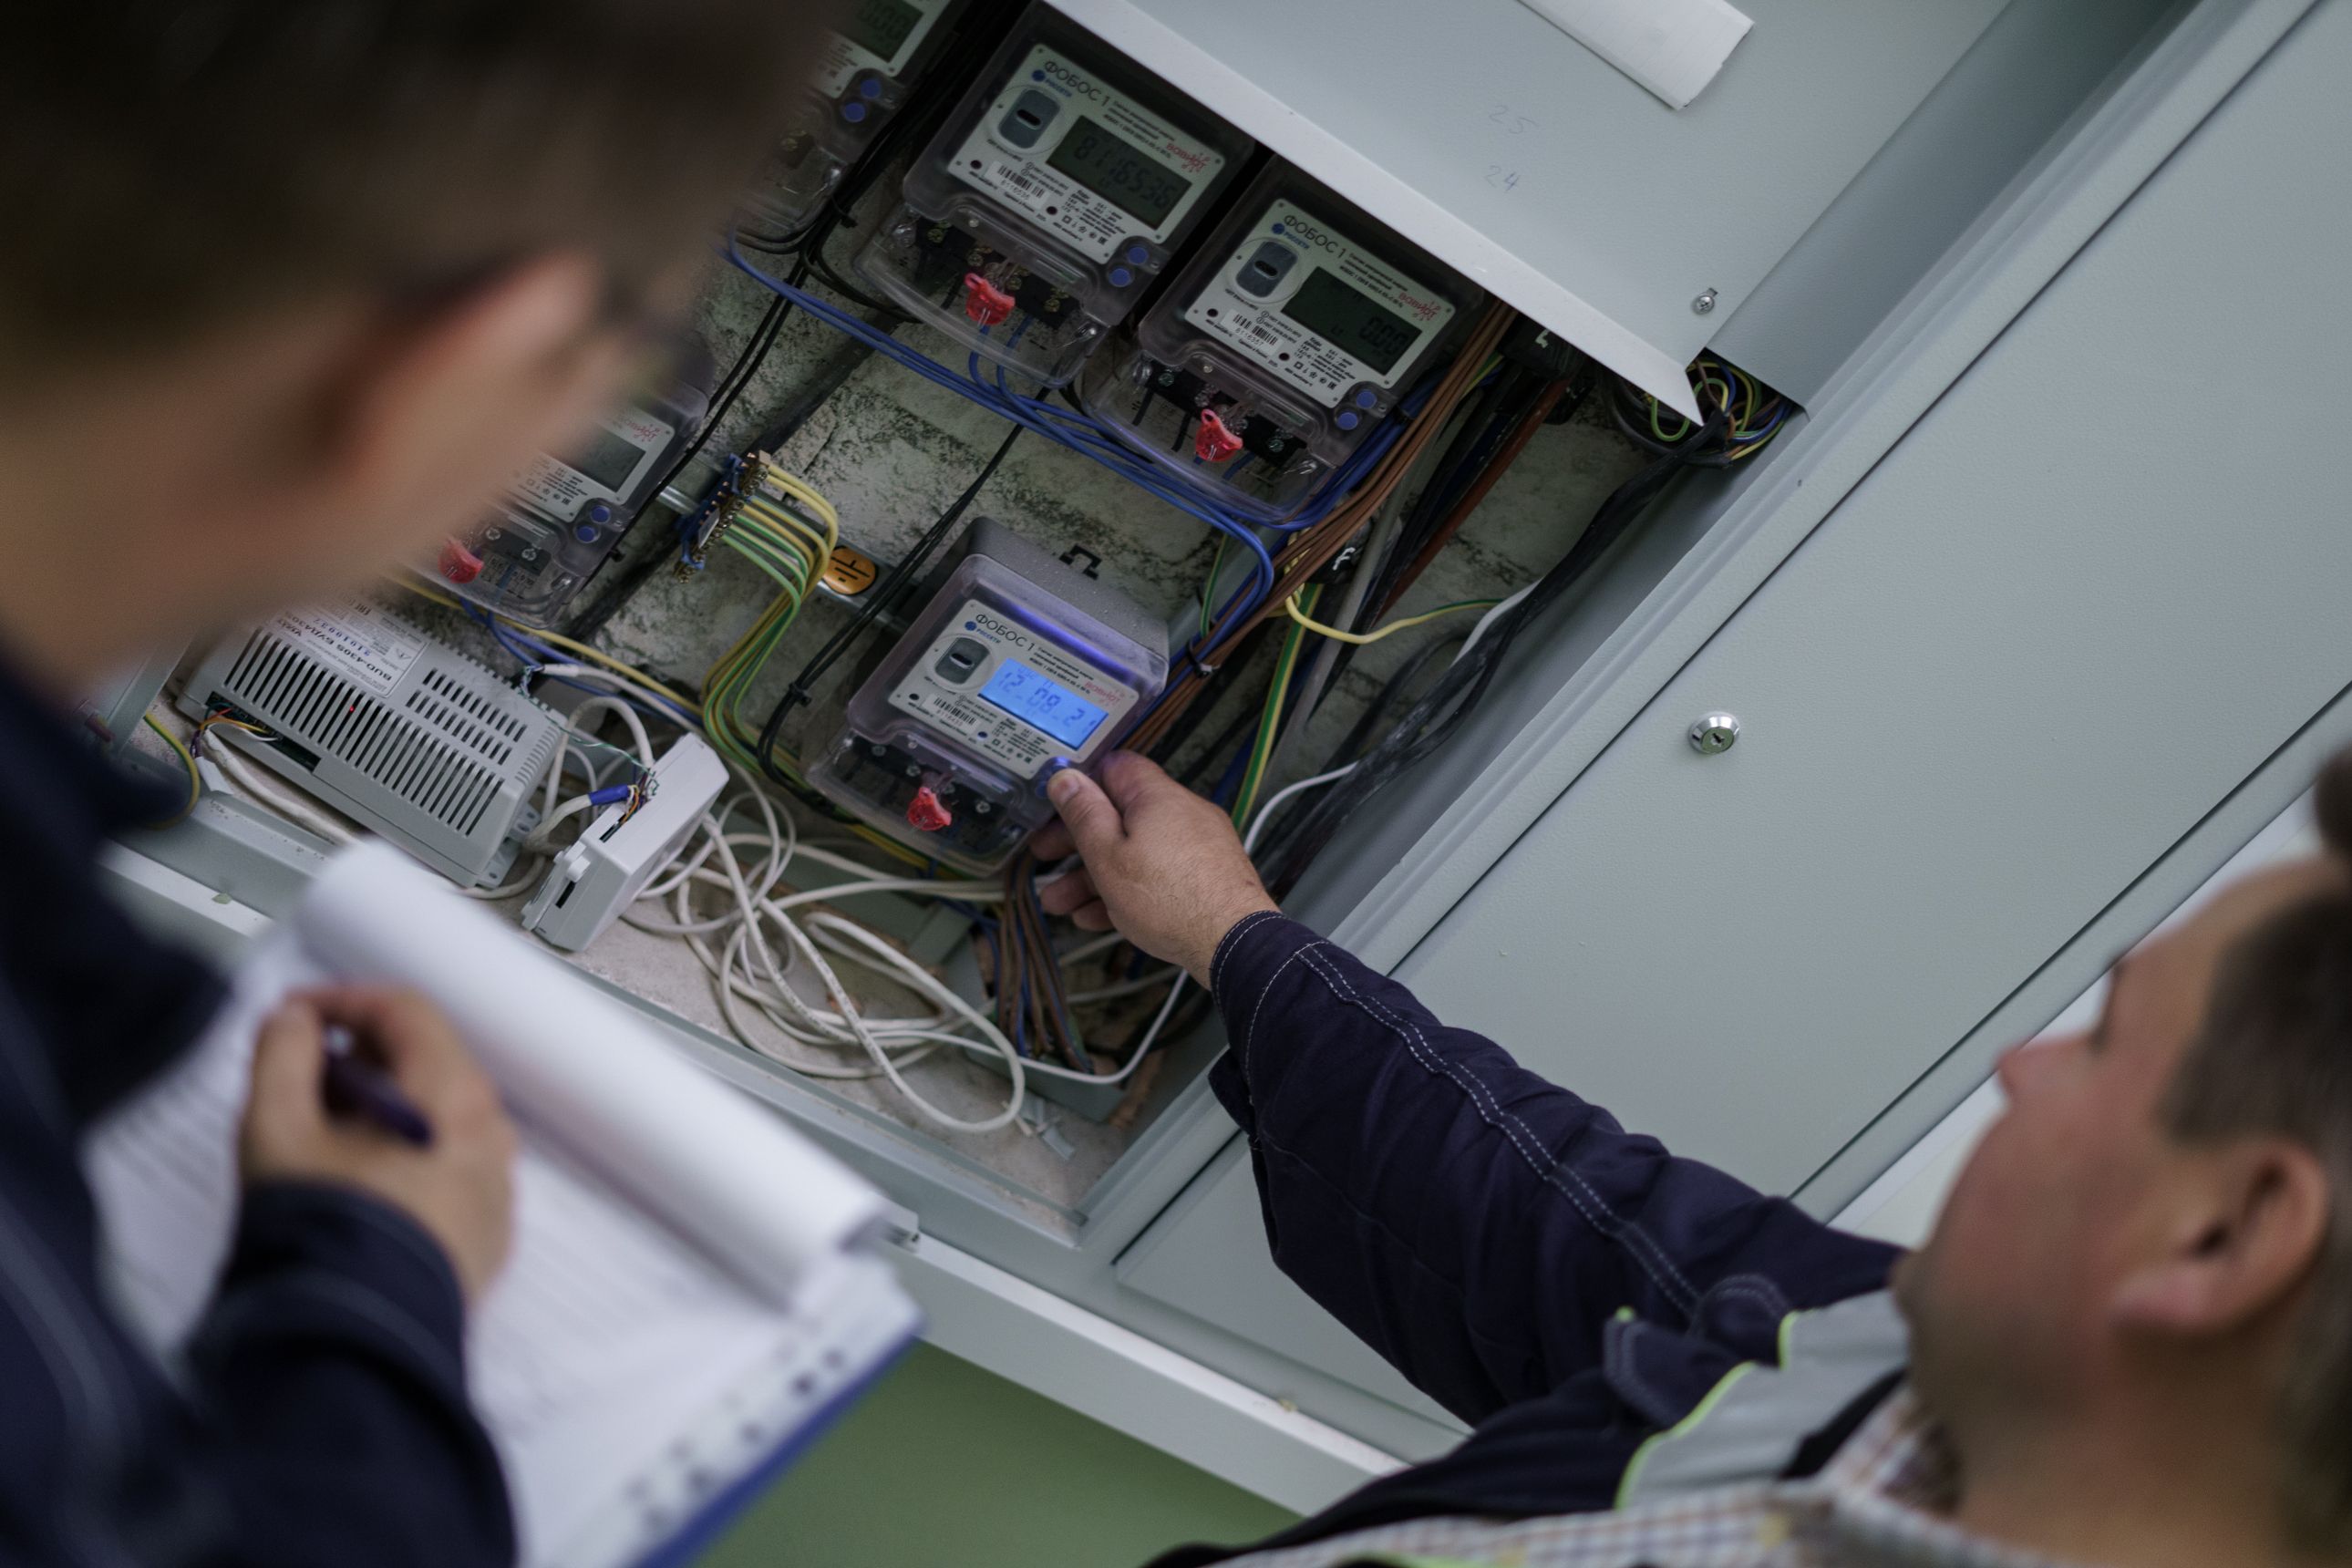 Неплательщика из Славска «поймали» на хищении электроэнергии